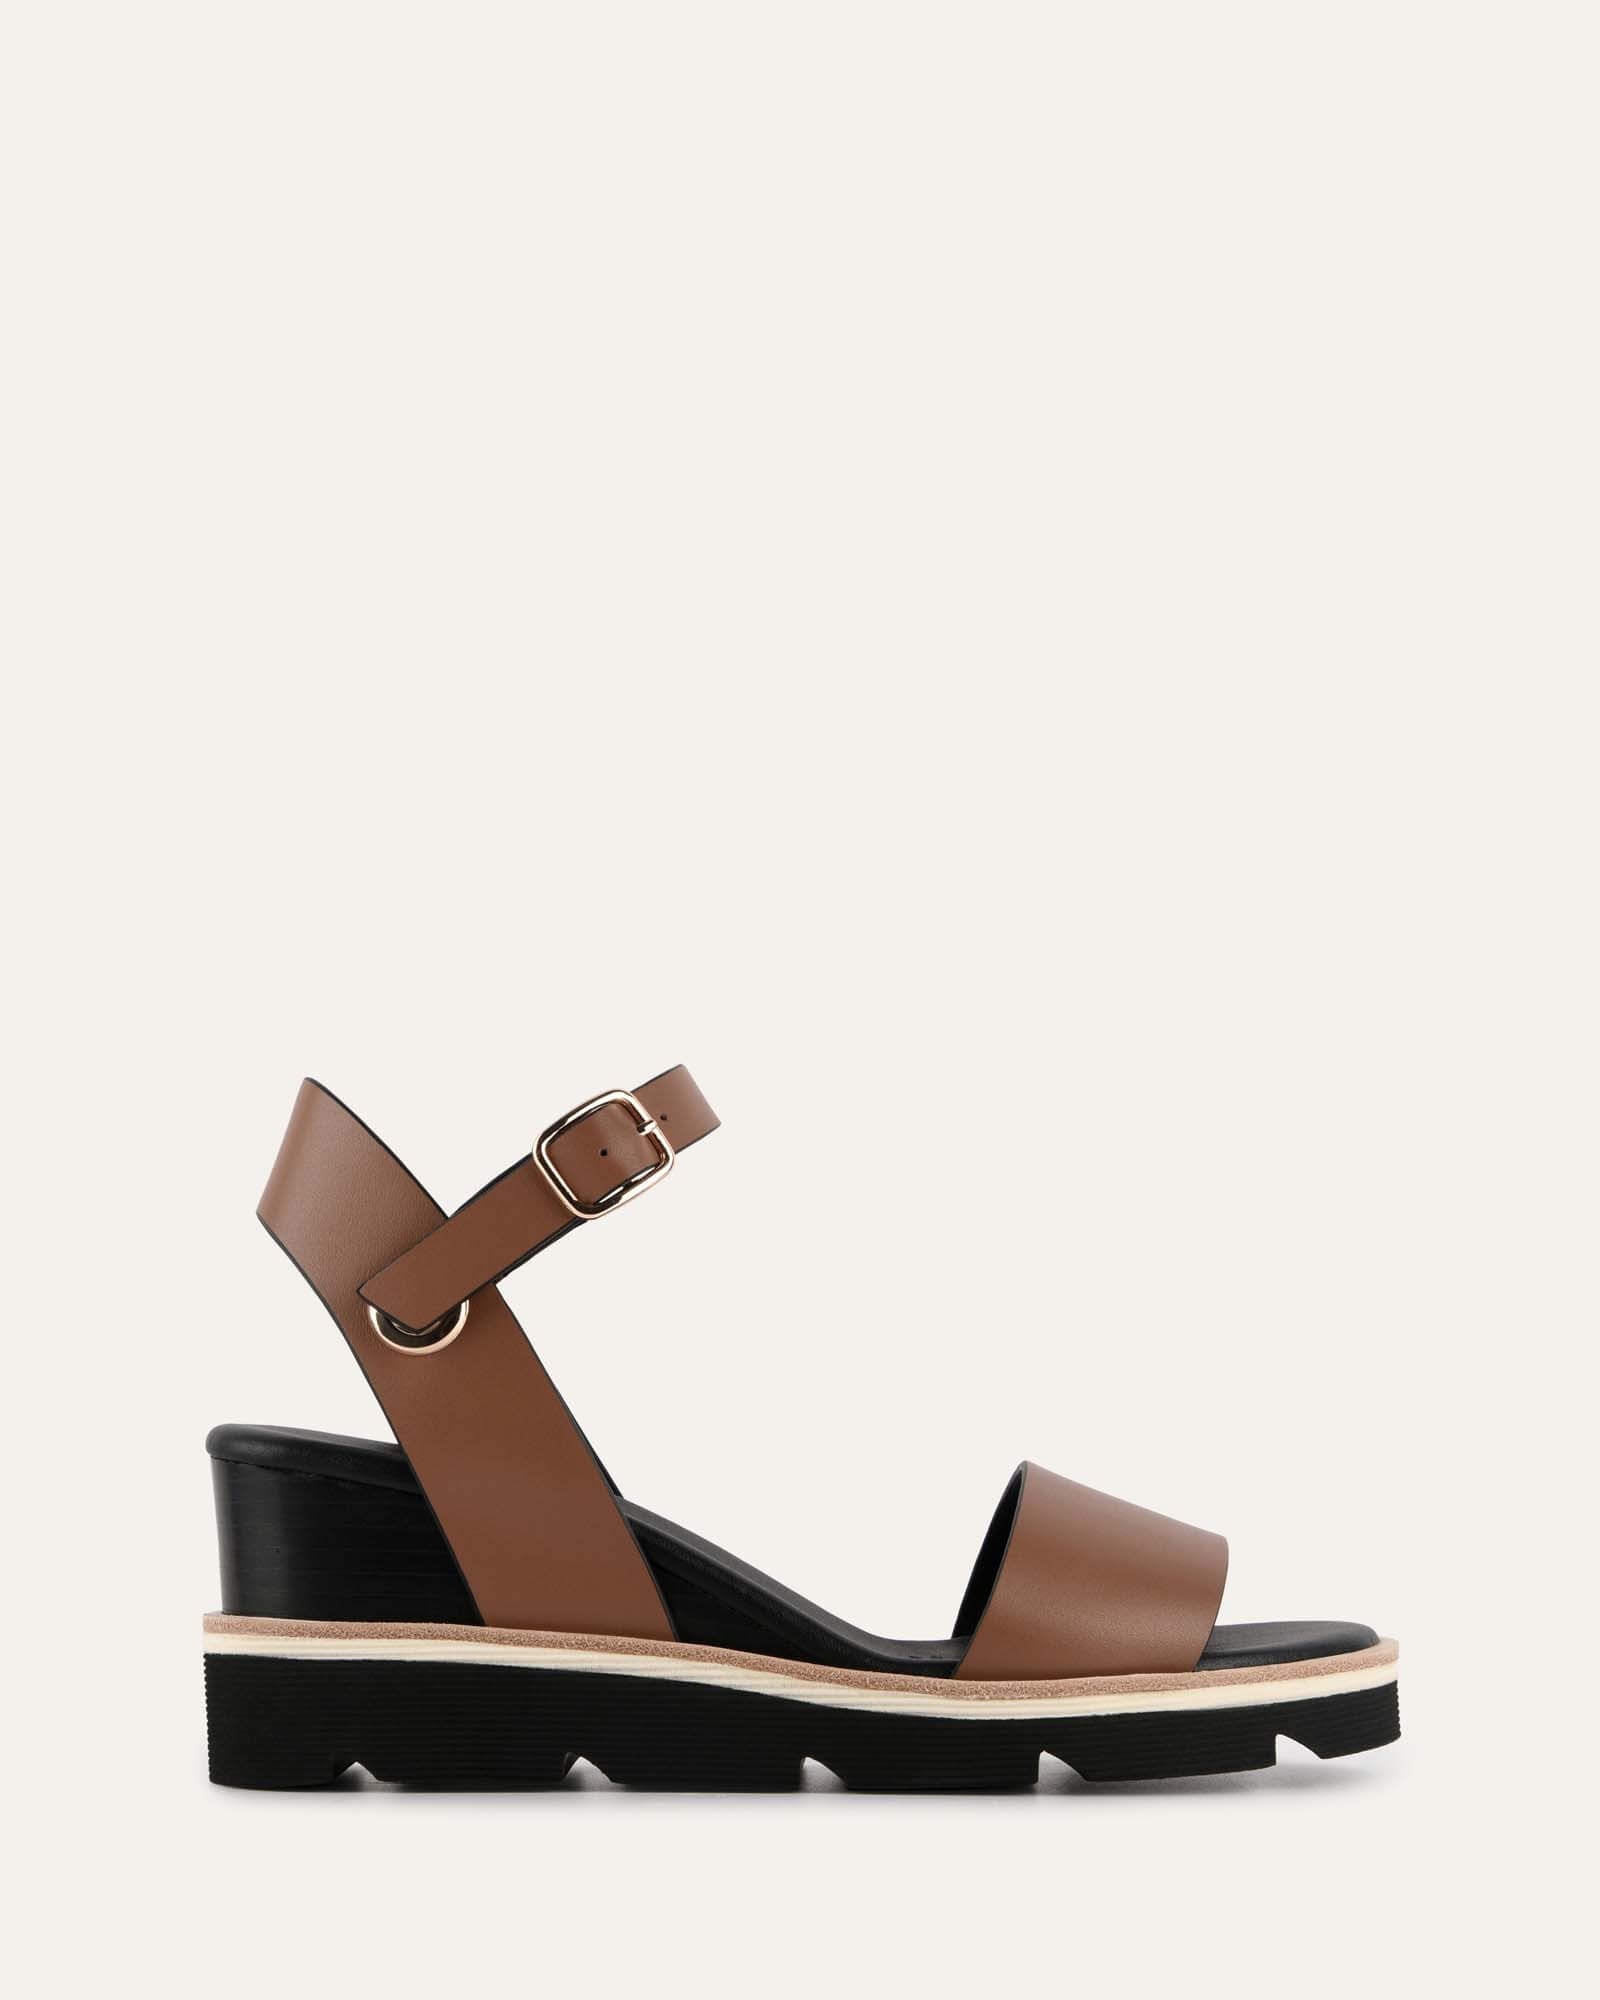 Cute Tan Heels - Peep Toe Heels - Wedge Sandals - $26.00 - Lulus